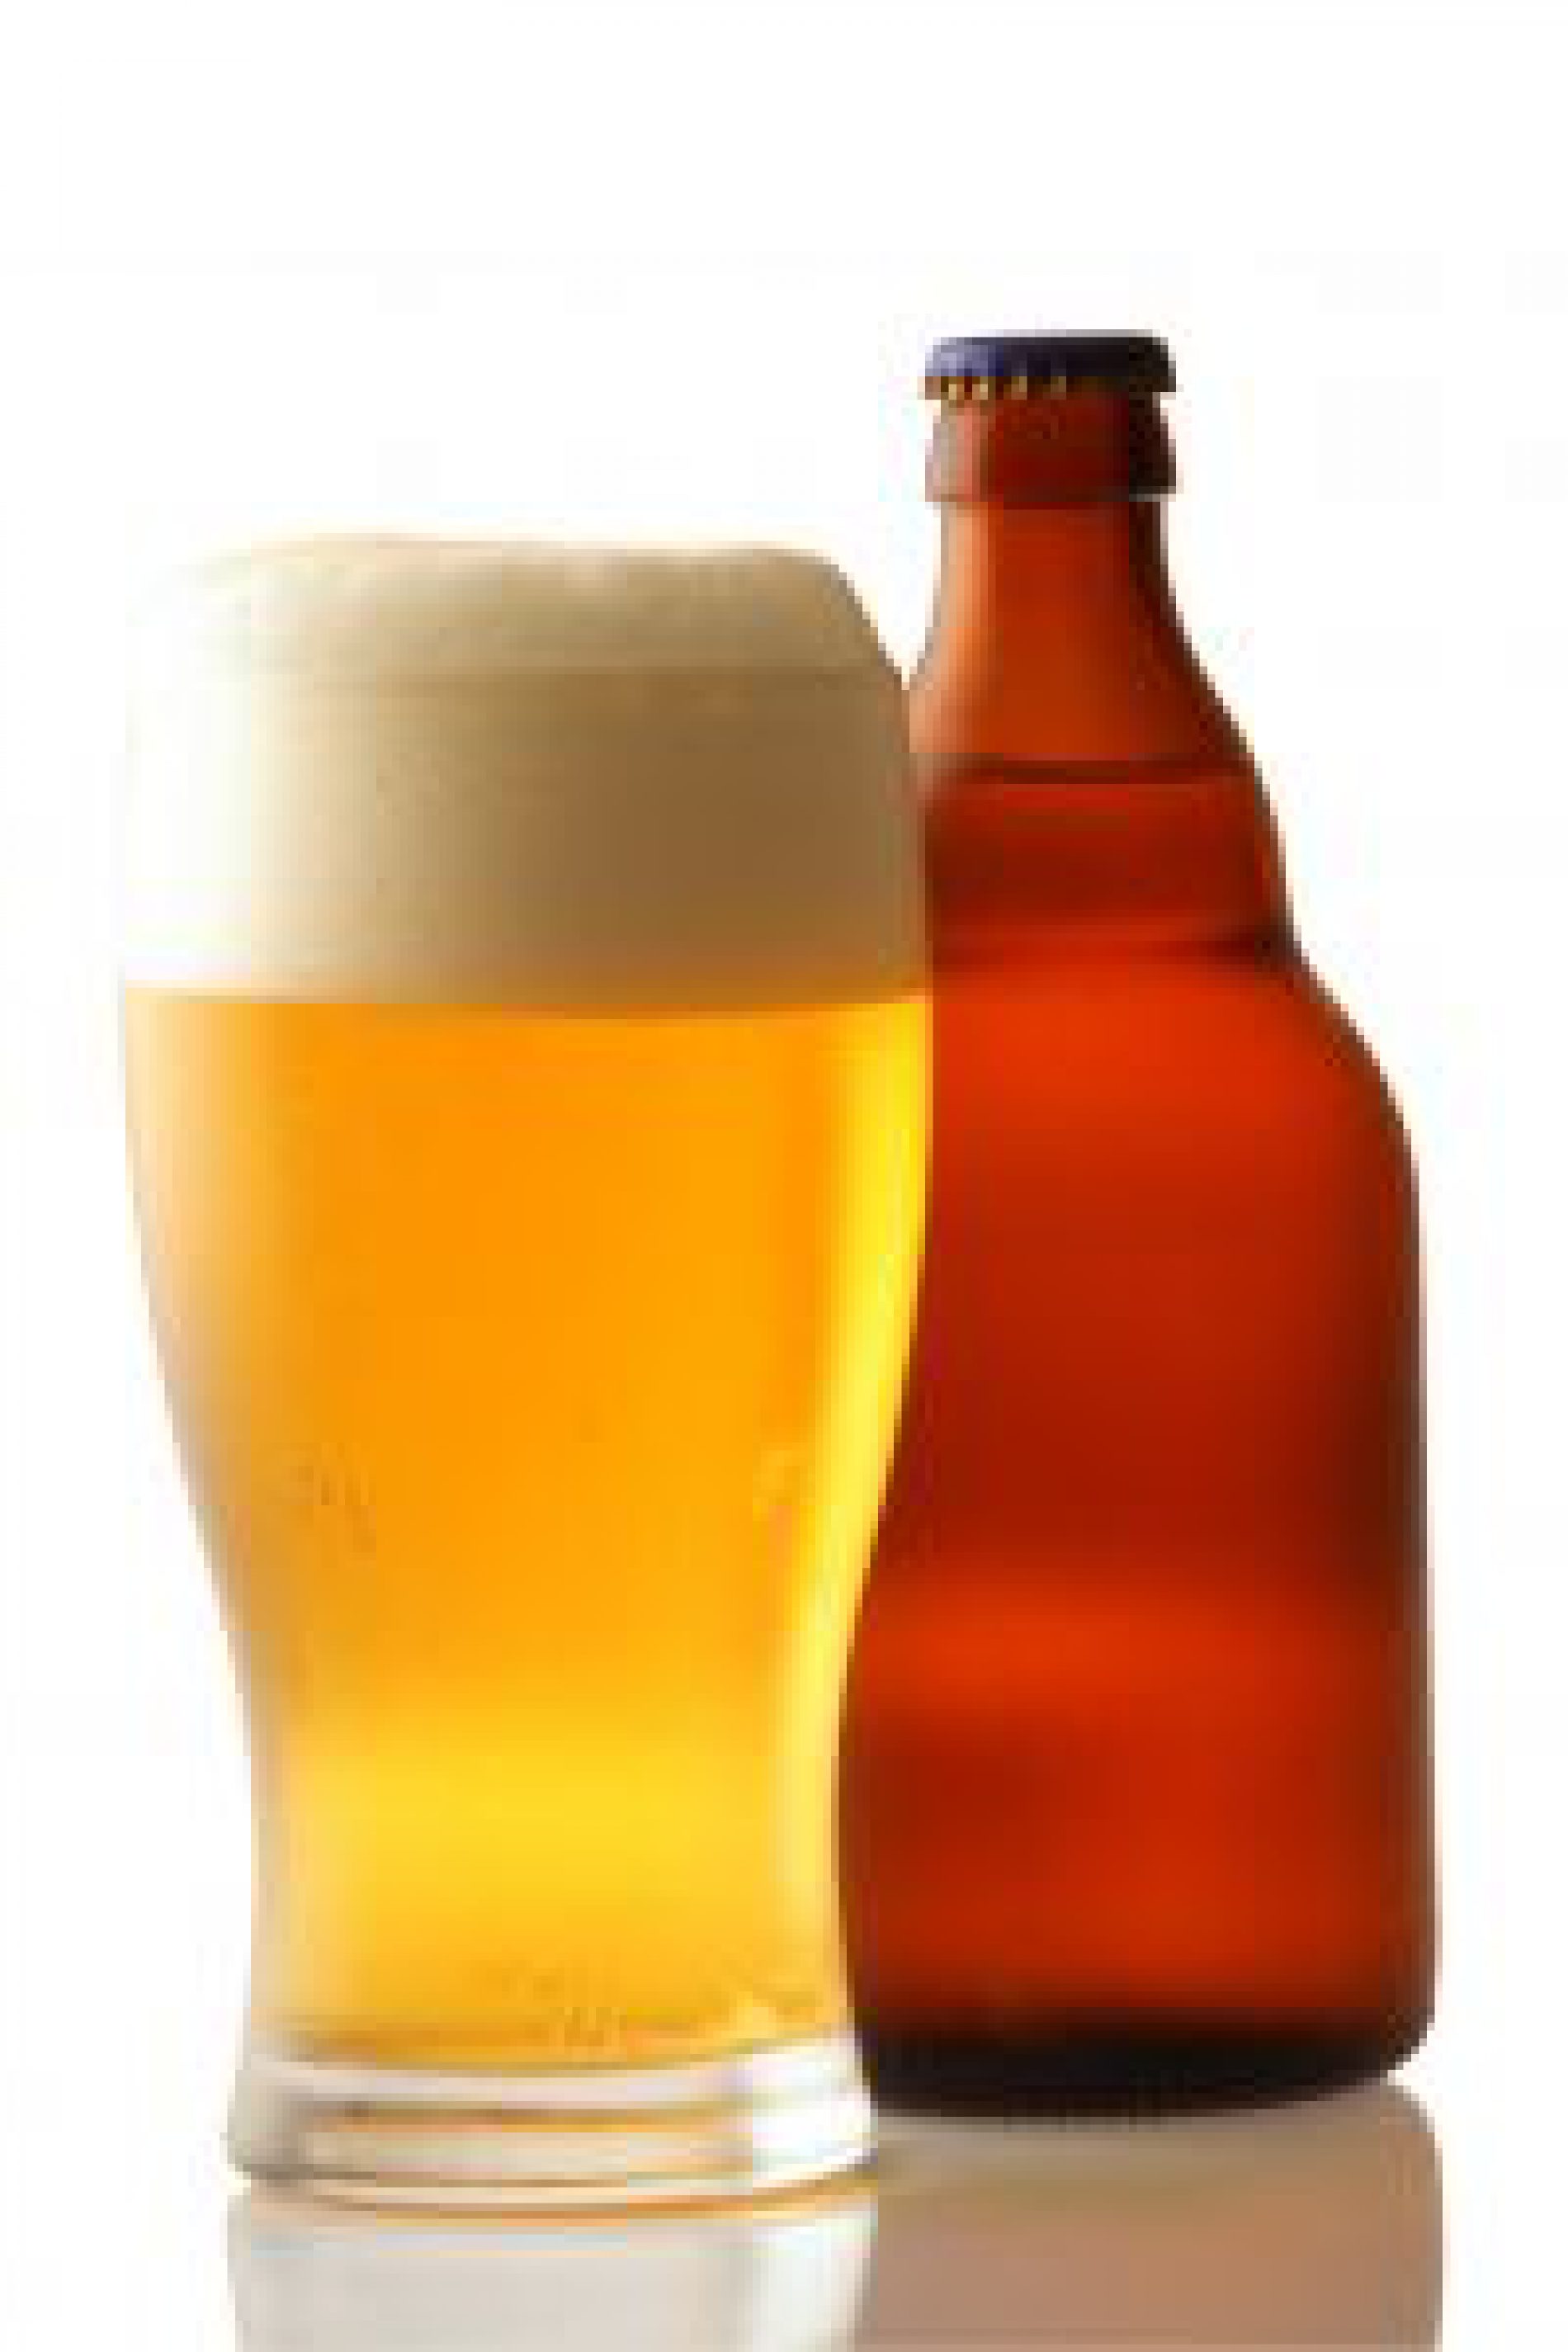 Pod koniec lipca w Olsztynie odbędą się I Olsztyńskie Targi Piw Rzemieślniczych